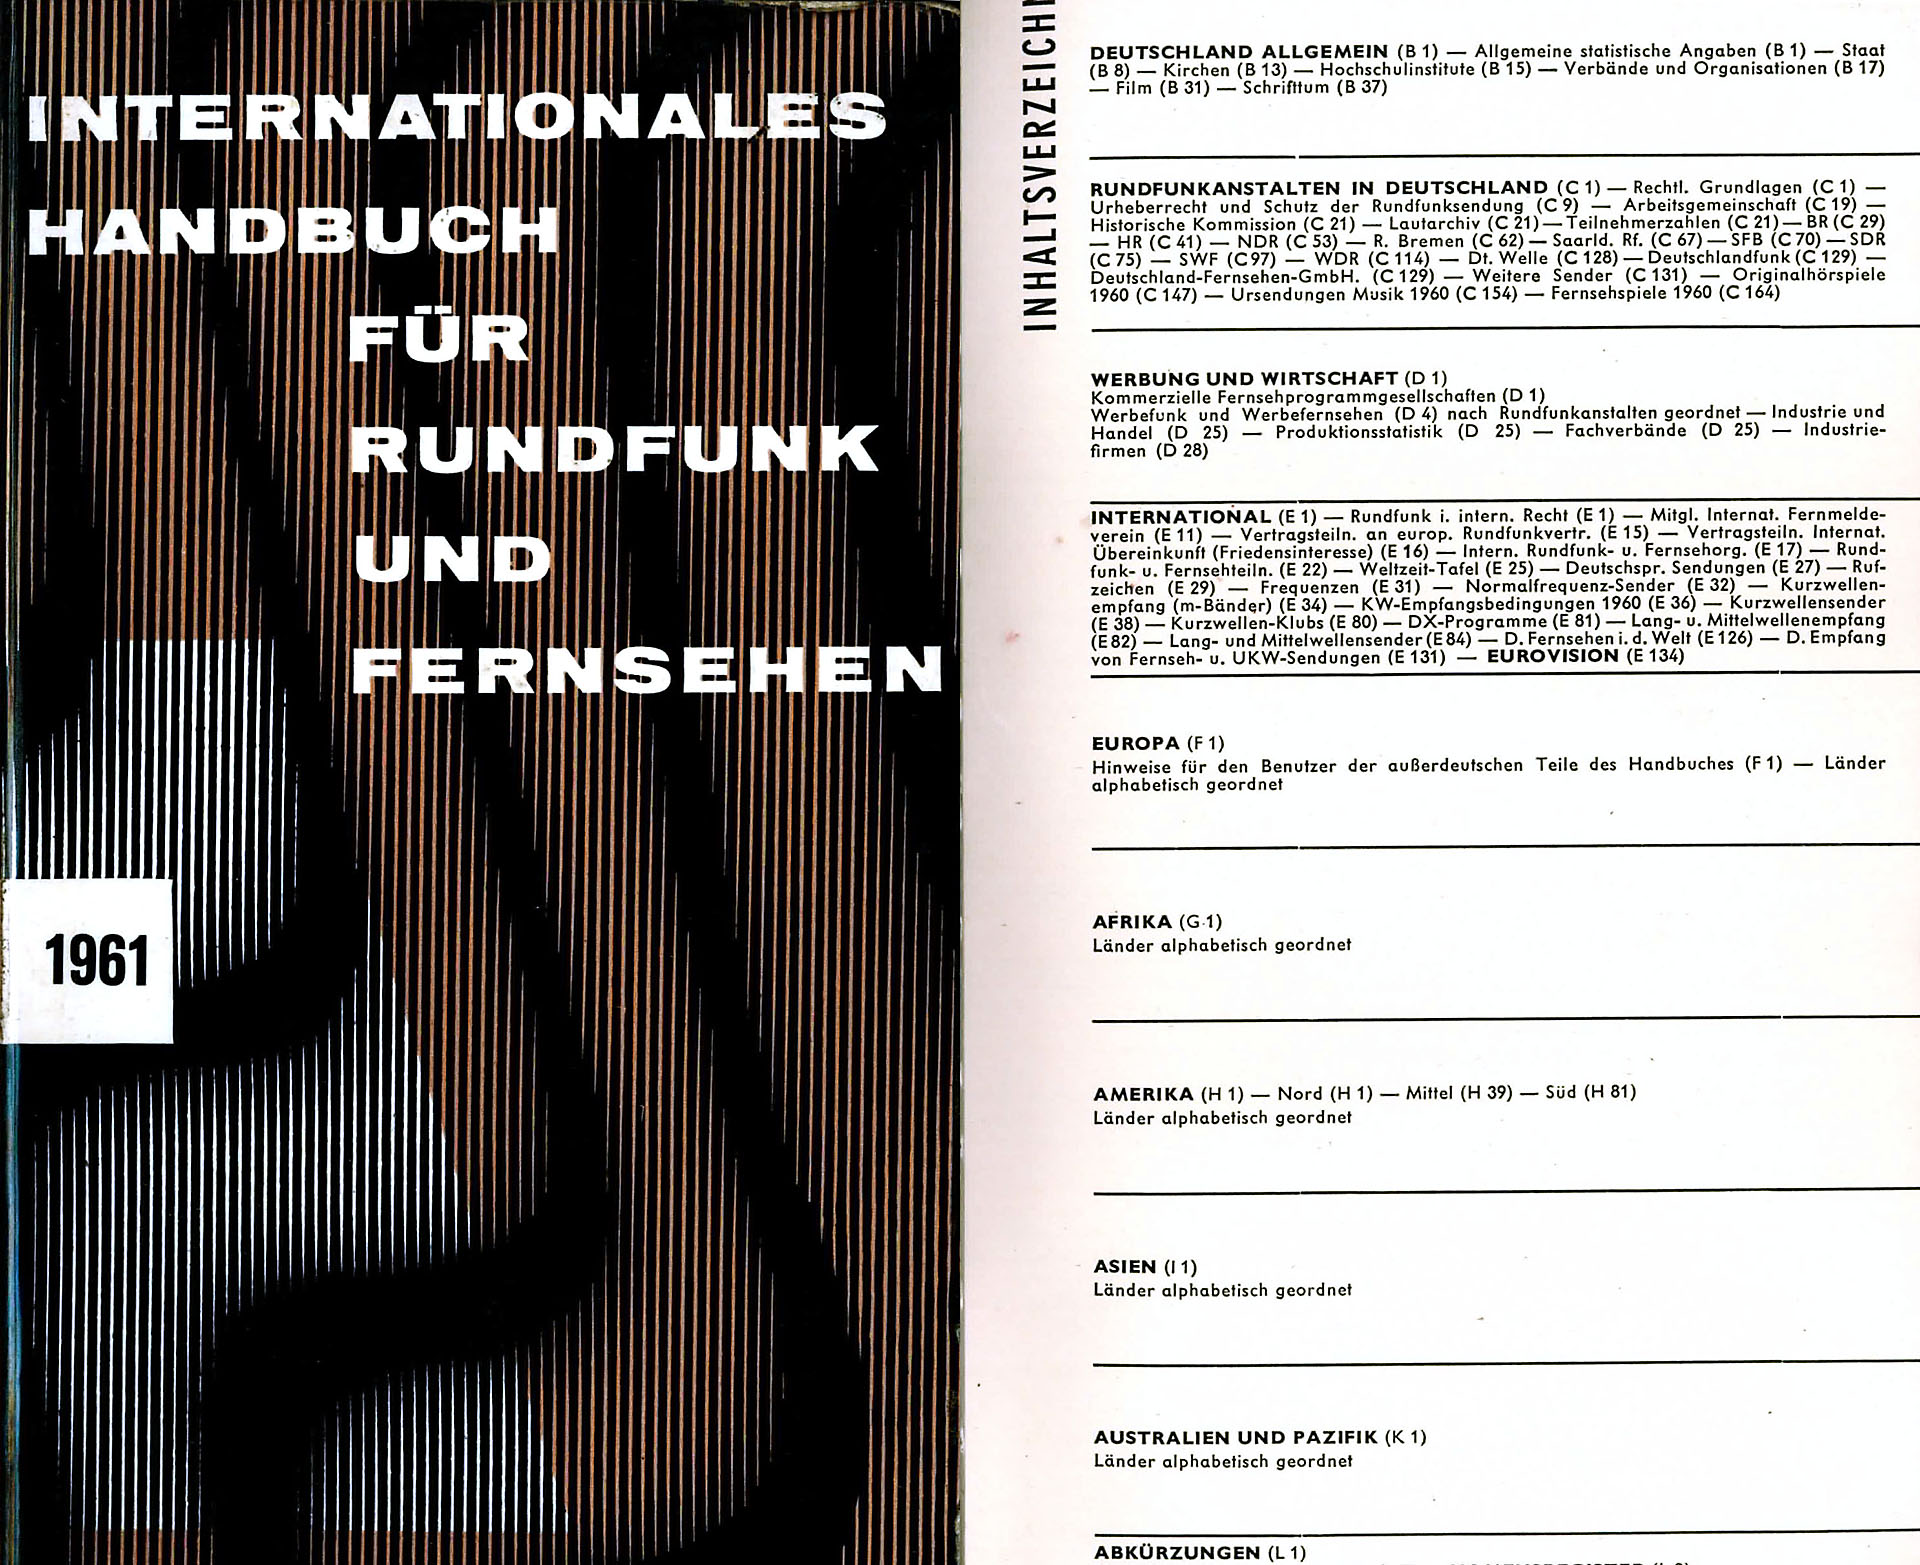 Internationales Handbuch für Rundfunk und Fernsehen - Hans Bredow Institut an der Universität Hamburg